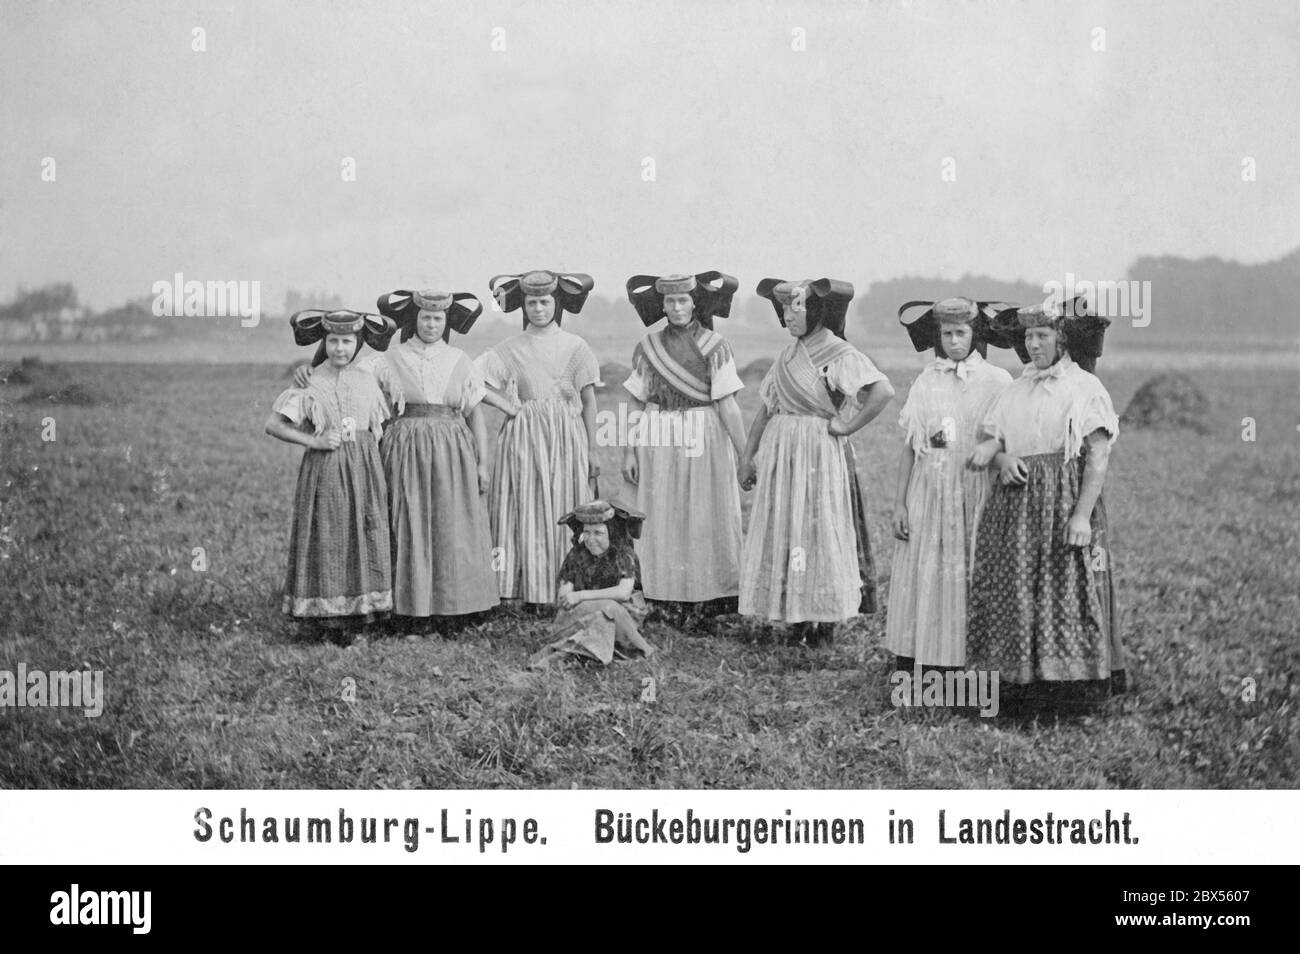 Das Bild von 1903 zeigt Frauen und Mädchen in traditioneller Bueckeburger  Tracht aus dem Schaumburg-Lippe-Gebiet im heutigen Niedersachsen. Besonders  auffällig sind die großen, schwarzen Pinner- oder Bogenkappen  (Fluegelhauben) und die bunten Schürzen